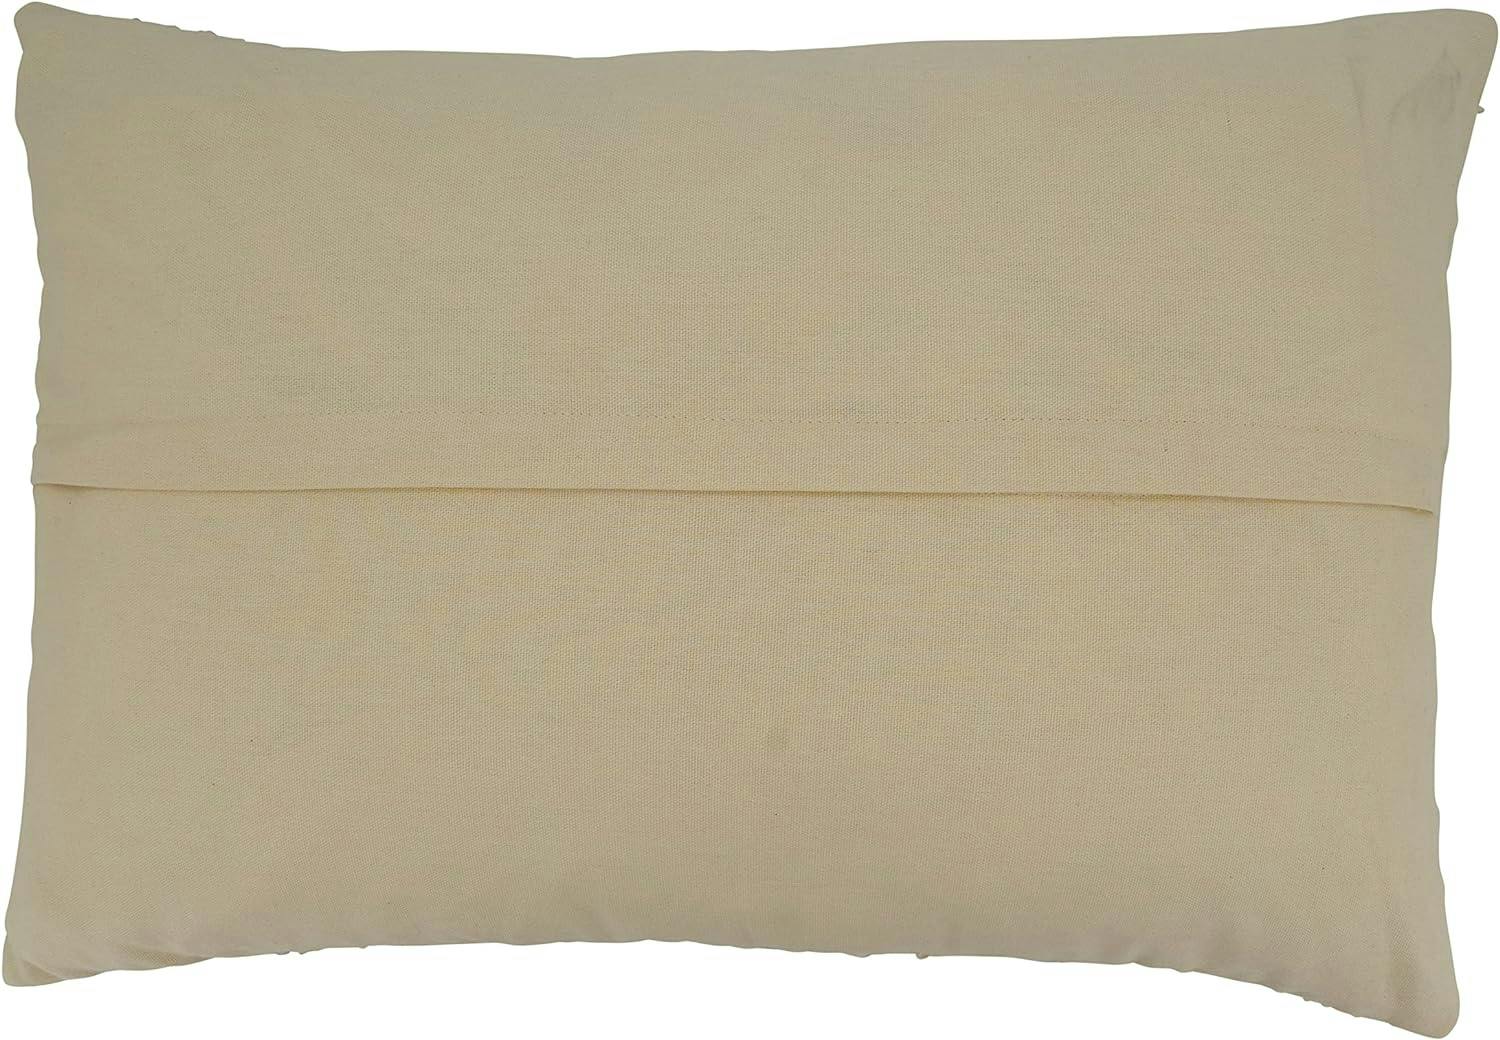 Black & White Thin Striped Cotton Throw Pillow Cover 16"x24"